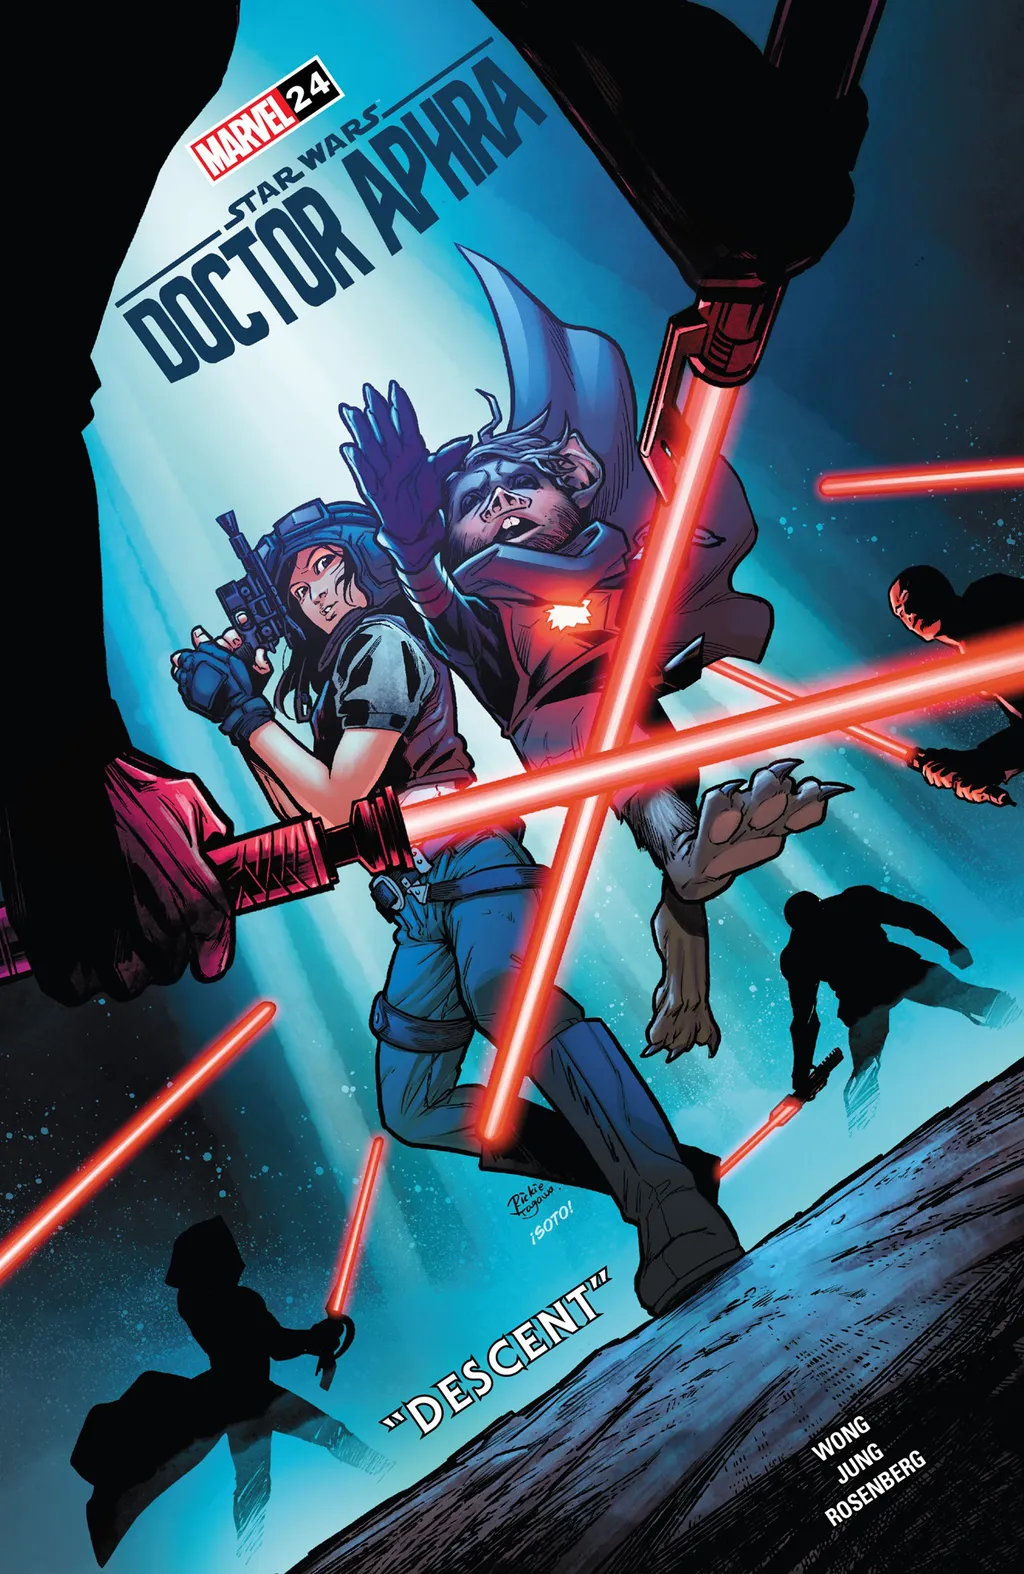 Revelação da espada destruidora de Sith em Star Wars acontece no título Doctor Aphra (Imagem: Reprodução/Marvel Comics)